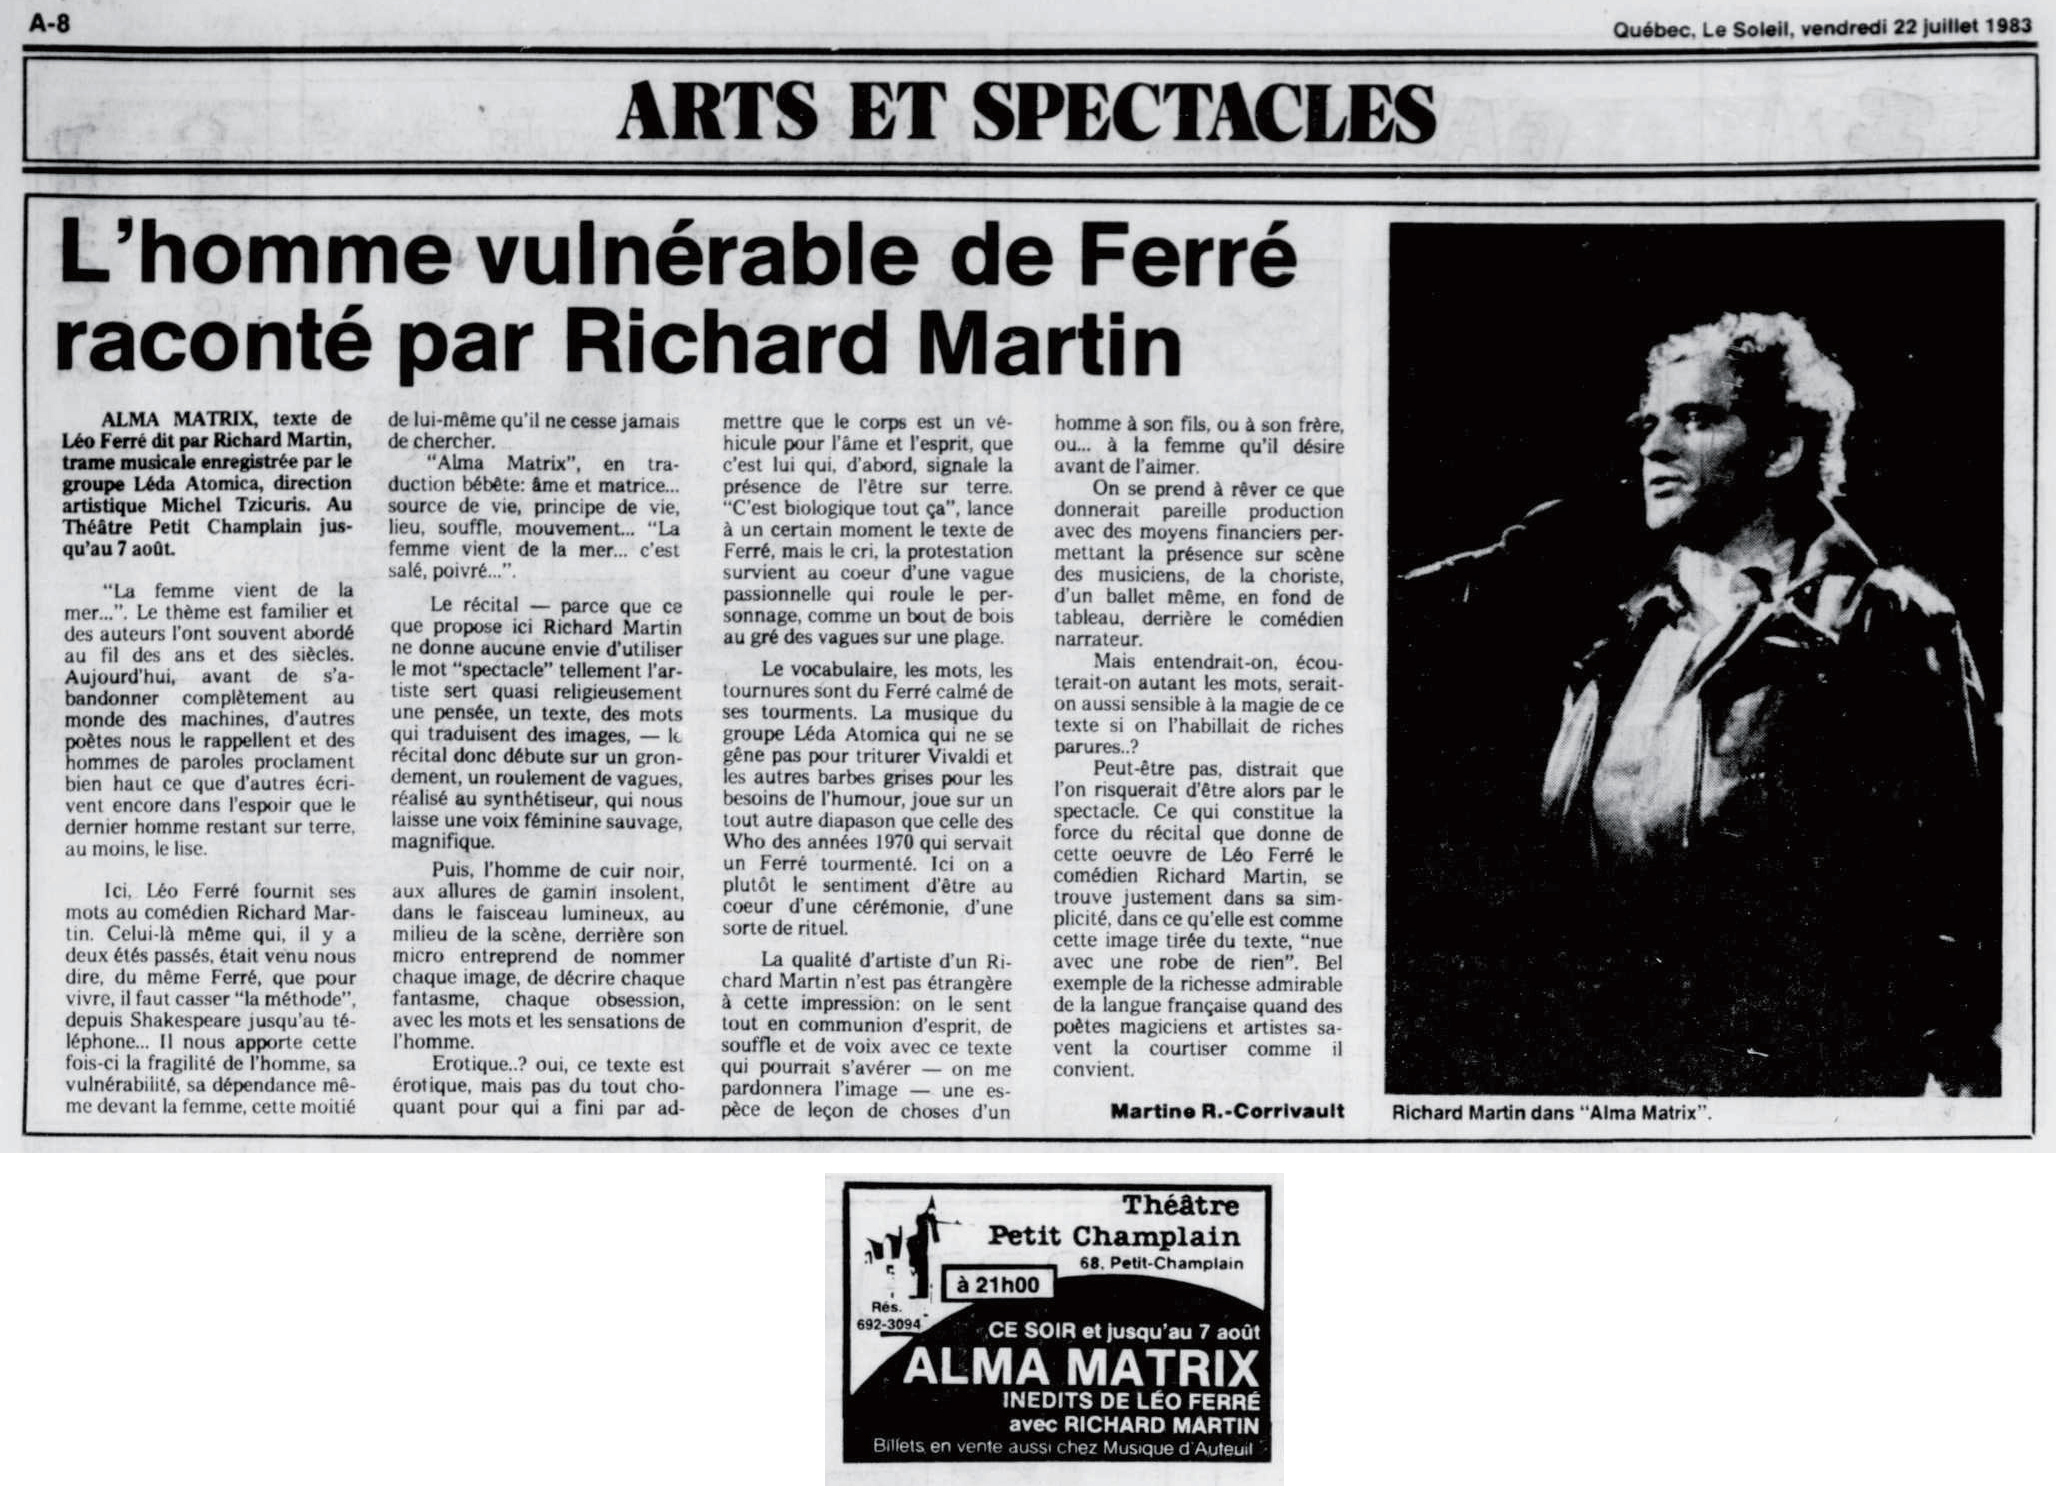 Léo Ferré - Le soleil, 1896- (Québec), 22 juillet 1983, Cahier A